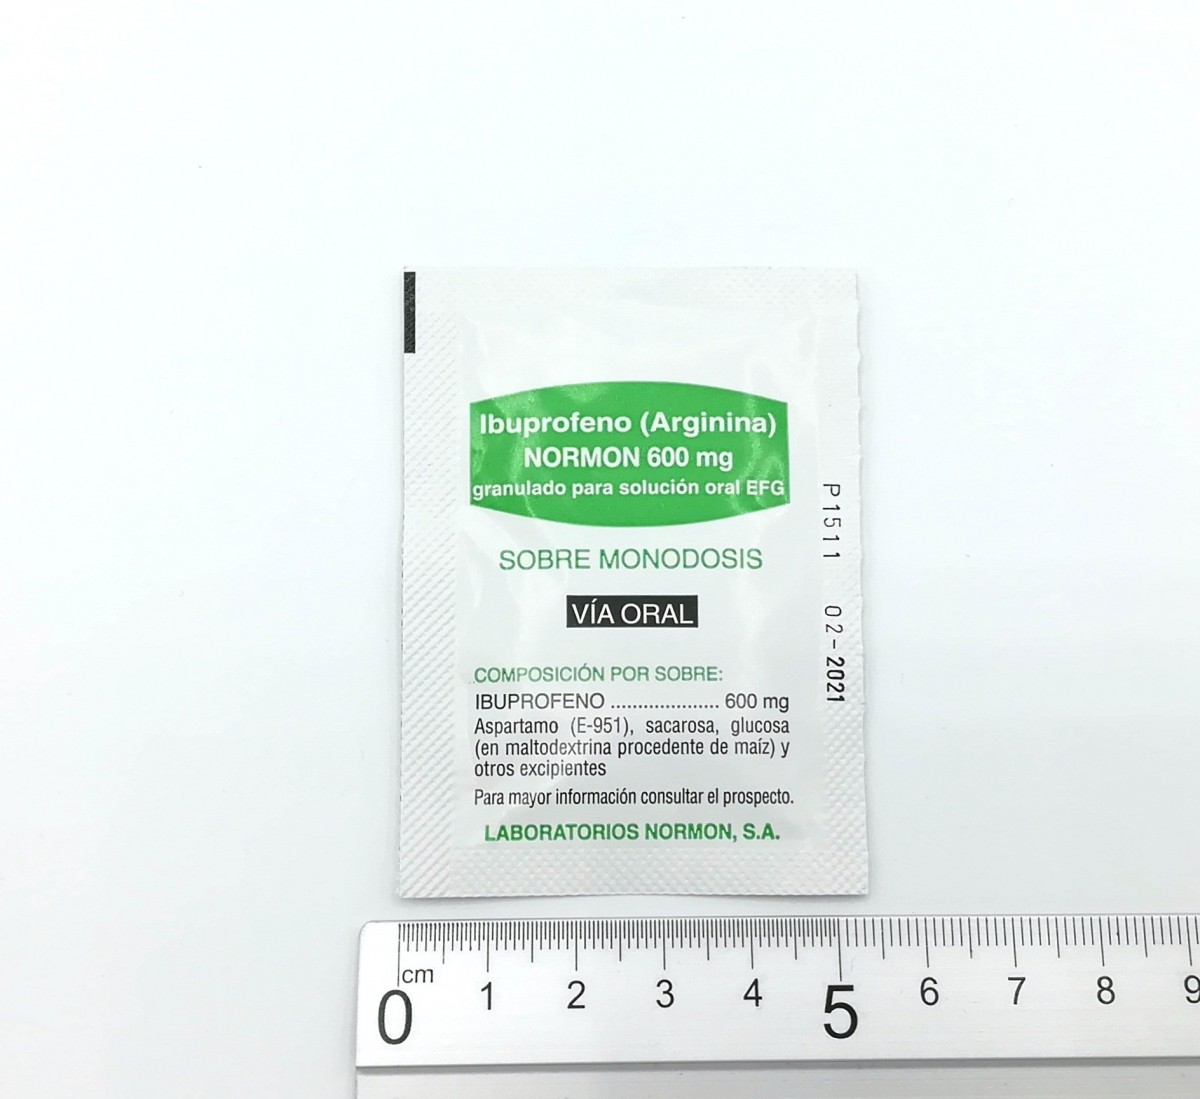 IBUPROFENO (ARGININA) NORMON 600 mg GRANULADO PARA SOLUCION ORAL EFG , 500 sobres fotografía de la forma farmacéutica.